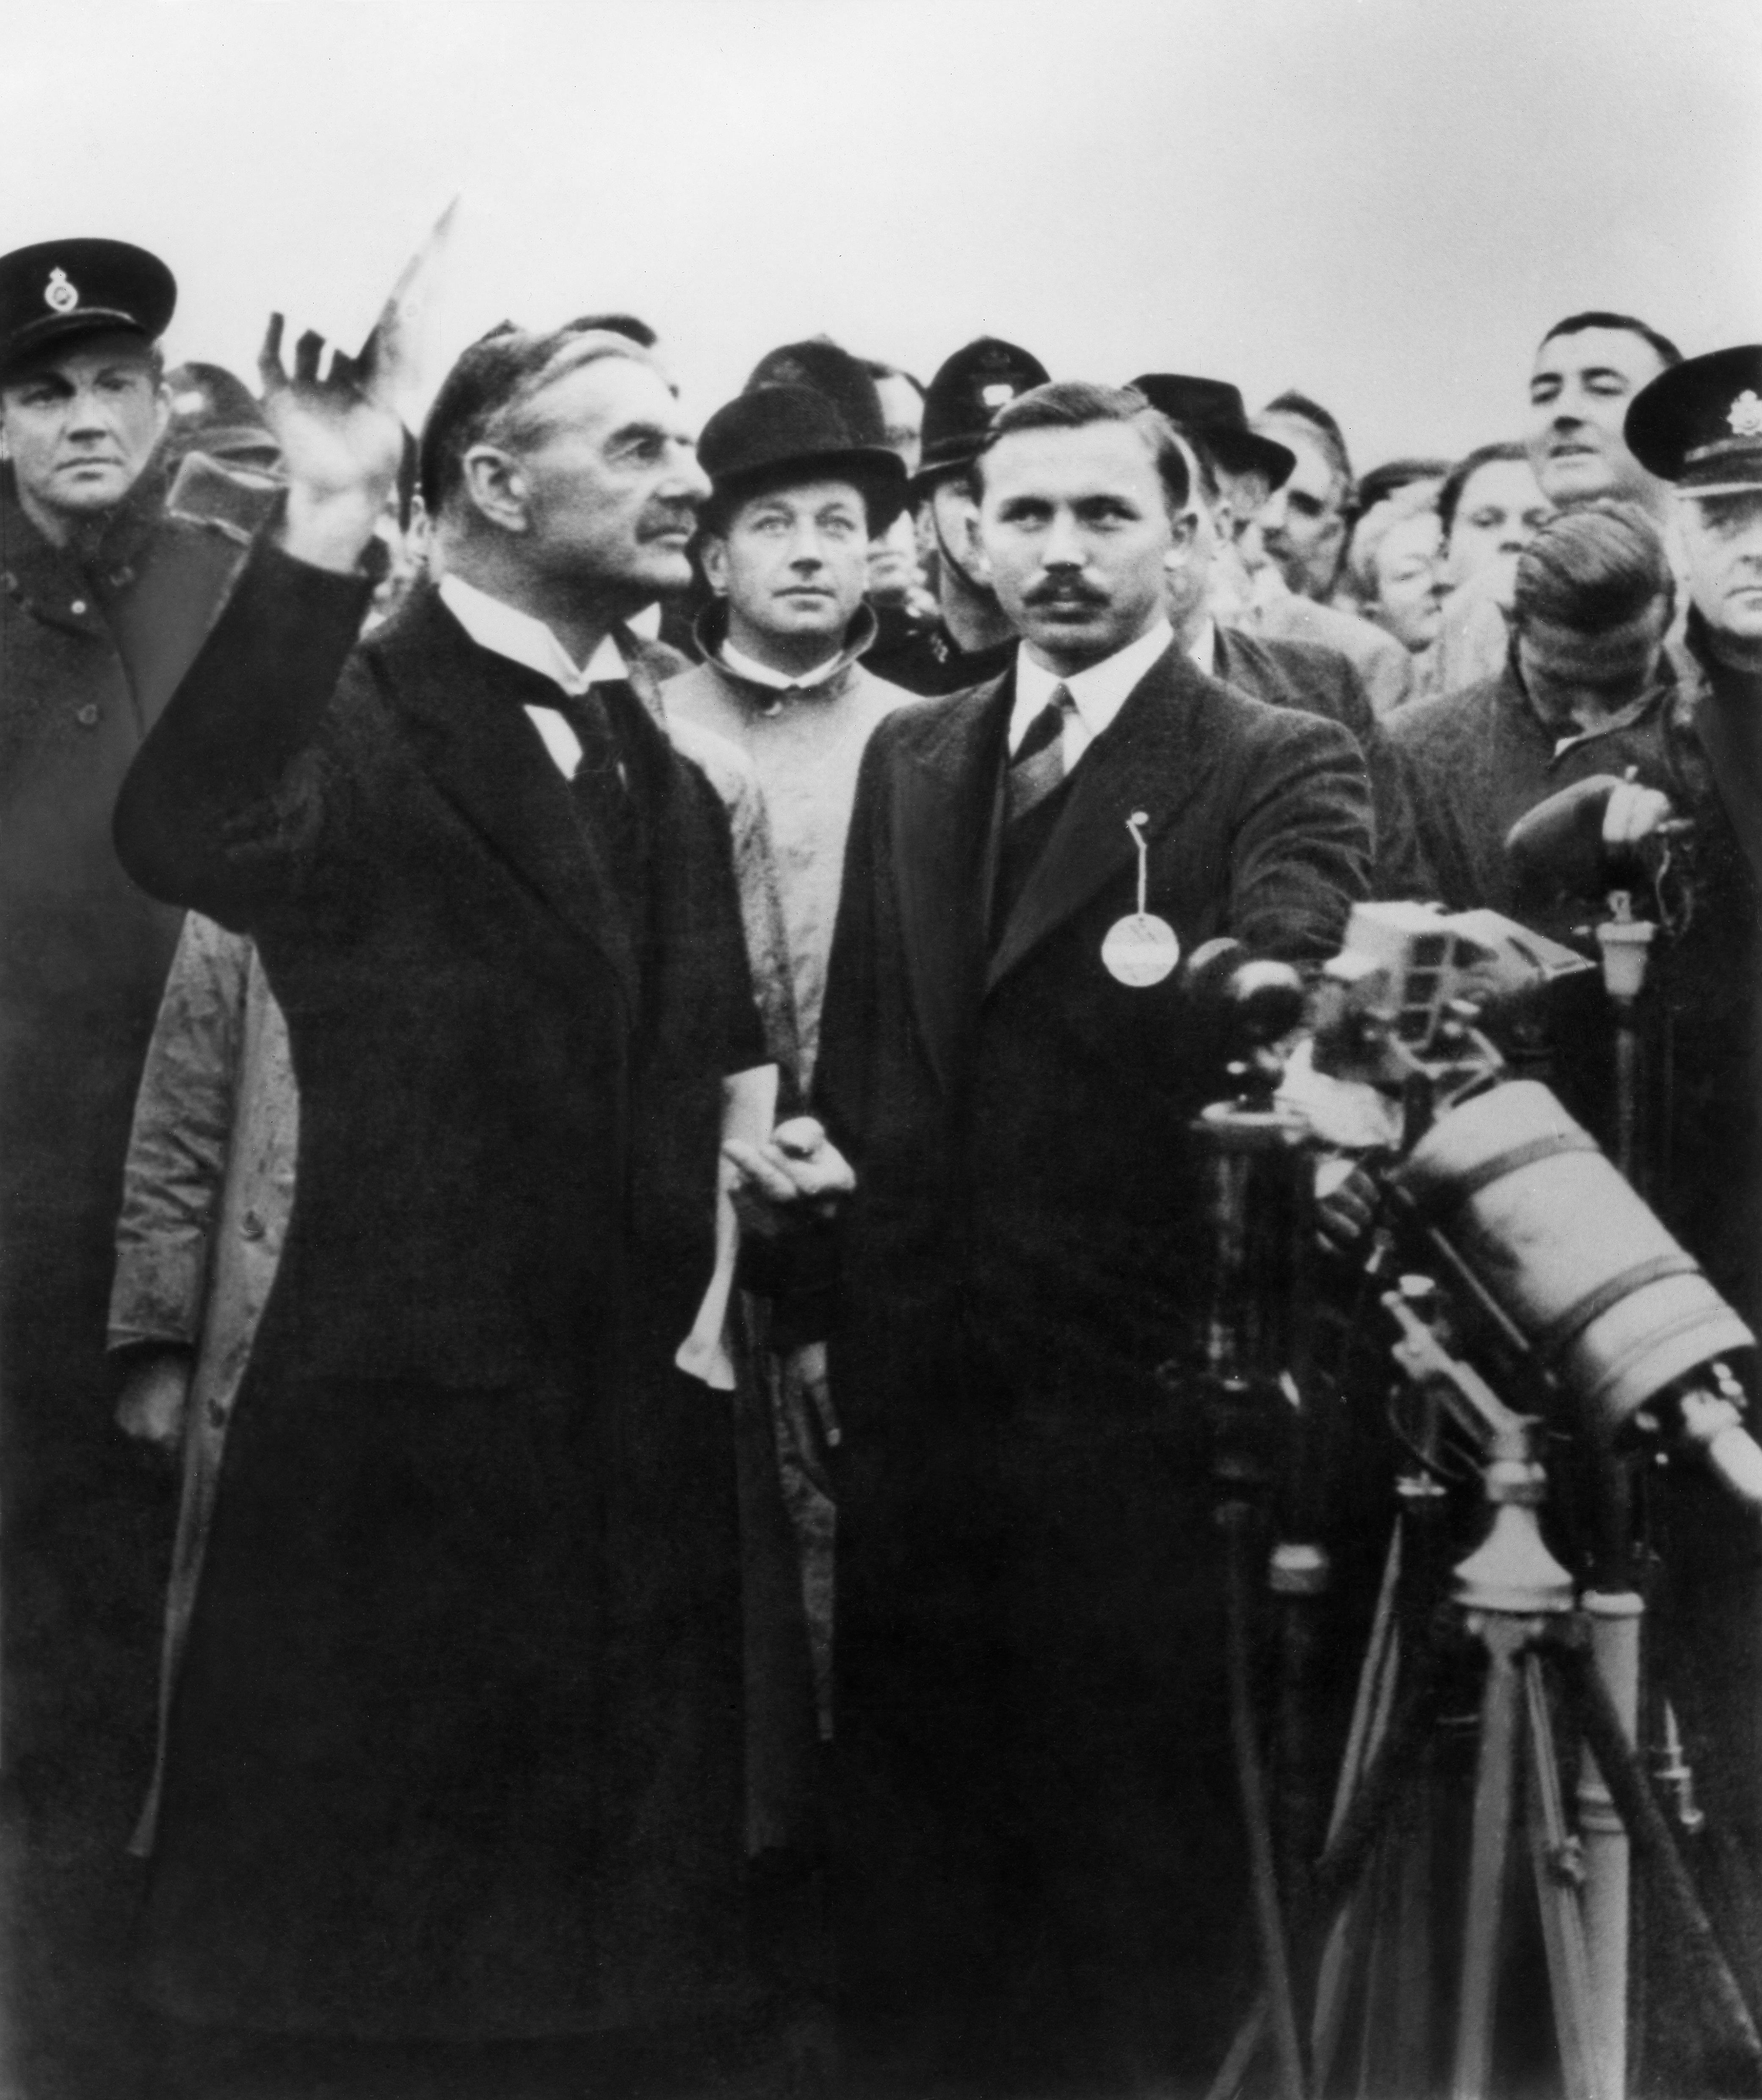 Brytyjski premier Neville Chamberlain przemawiający do tłumu na lotnisku Heston po rozmowach w Niemczech z nazistowskim przywódcą Adolfem Hitlerem